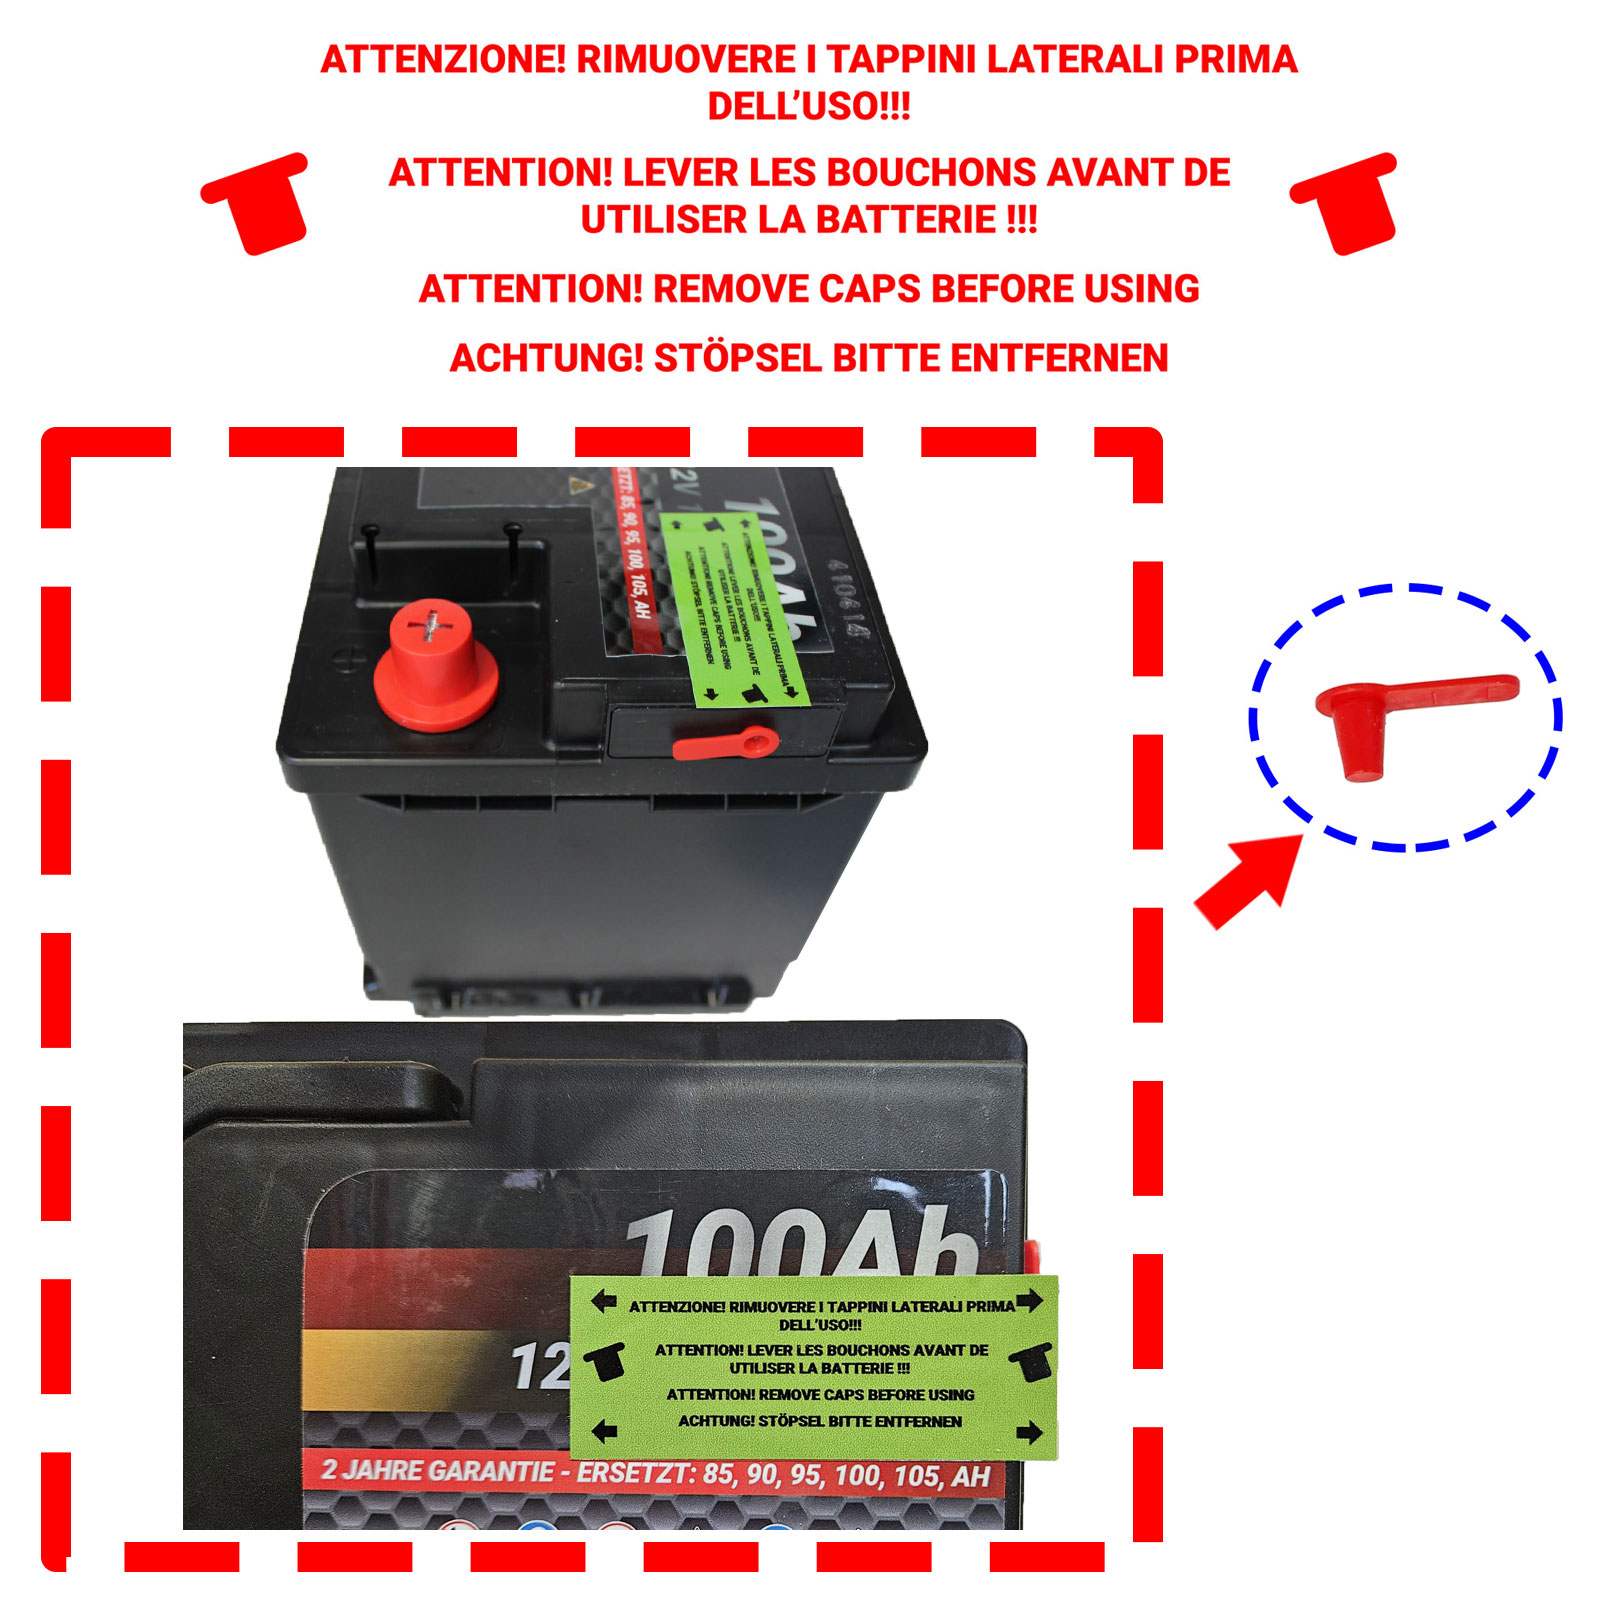 Batterie-Auto-Démarrage-L2 / EA640 / H5 / 562.19-FIAMM-12v/60Ah/540A-positif  à droite-Valais - Winner Price